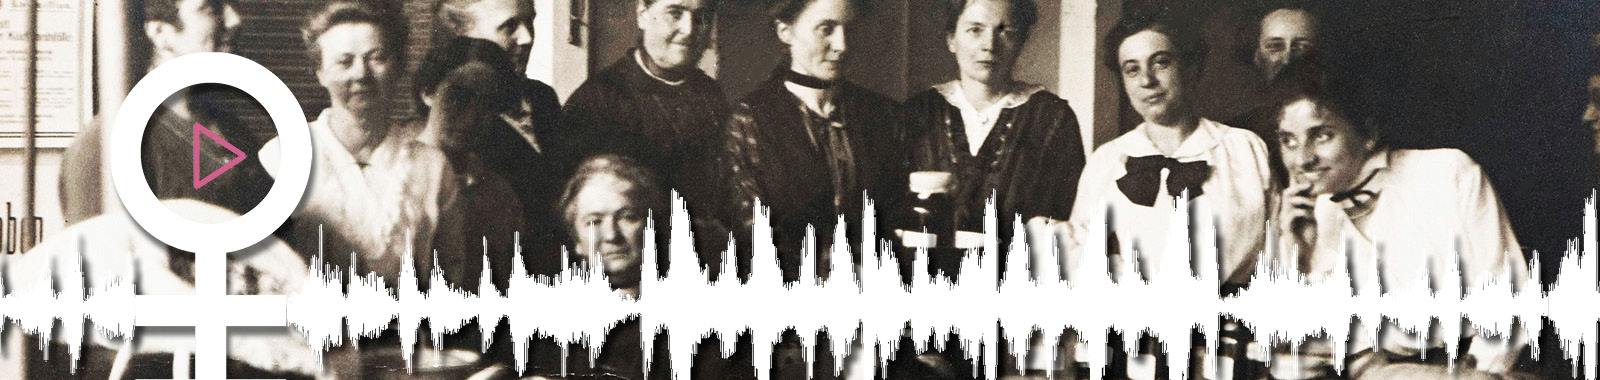 Headerbild zur Podcast-Unterseite. Zeigt eine Reihe von Frauen aus dem 19. Jahrhundert